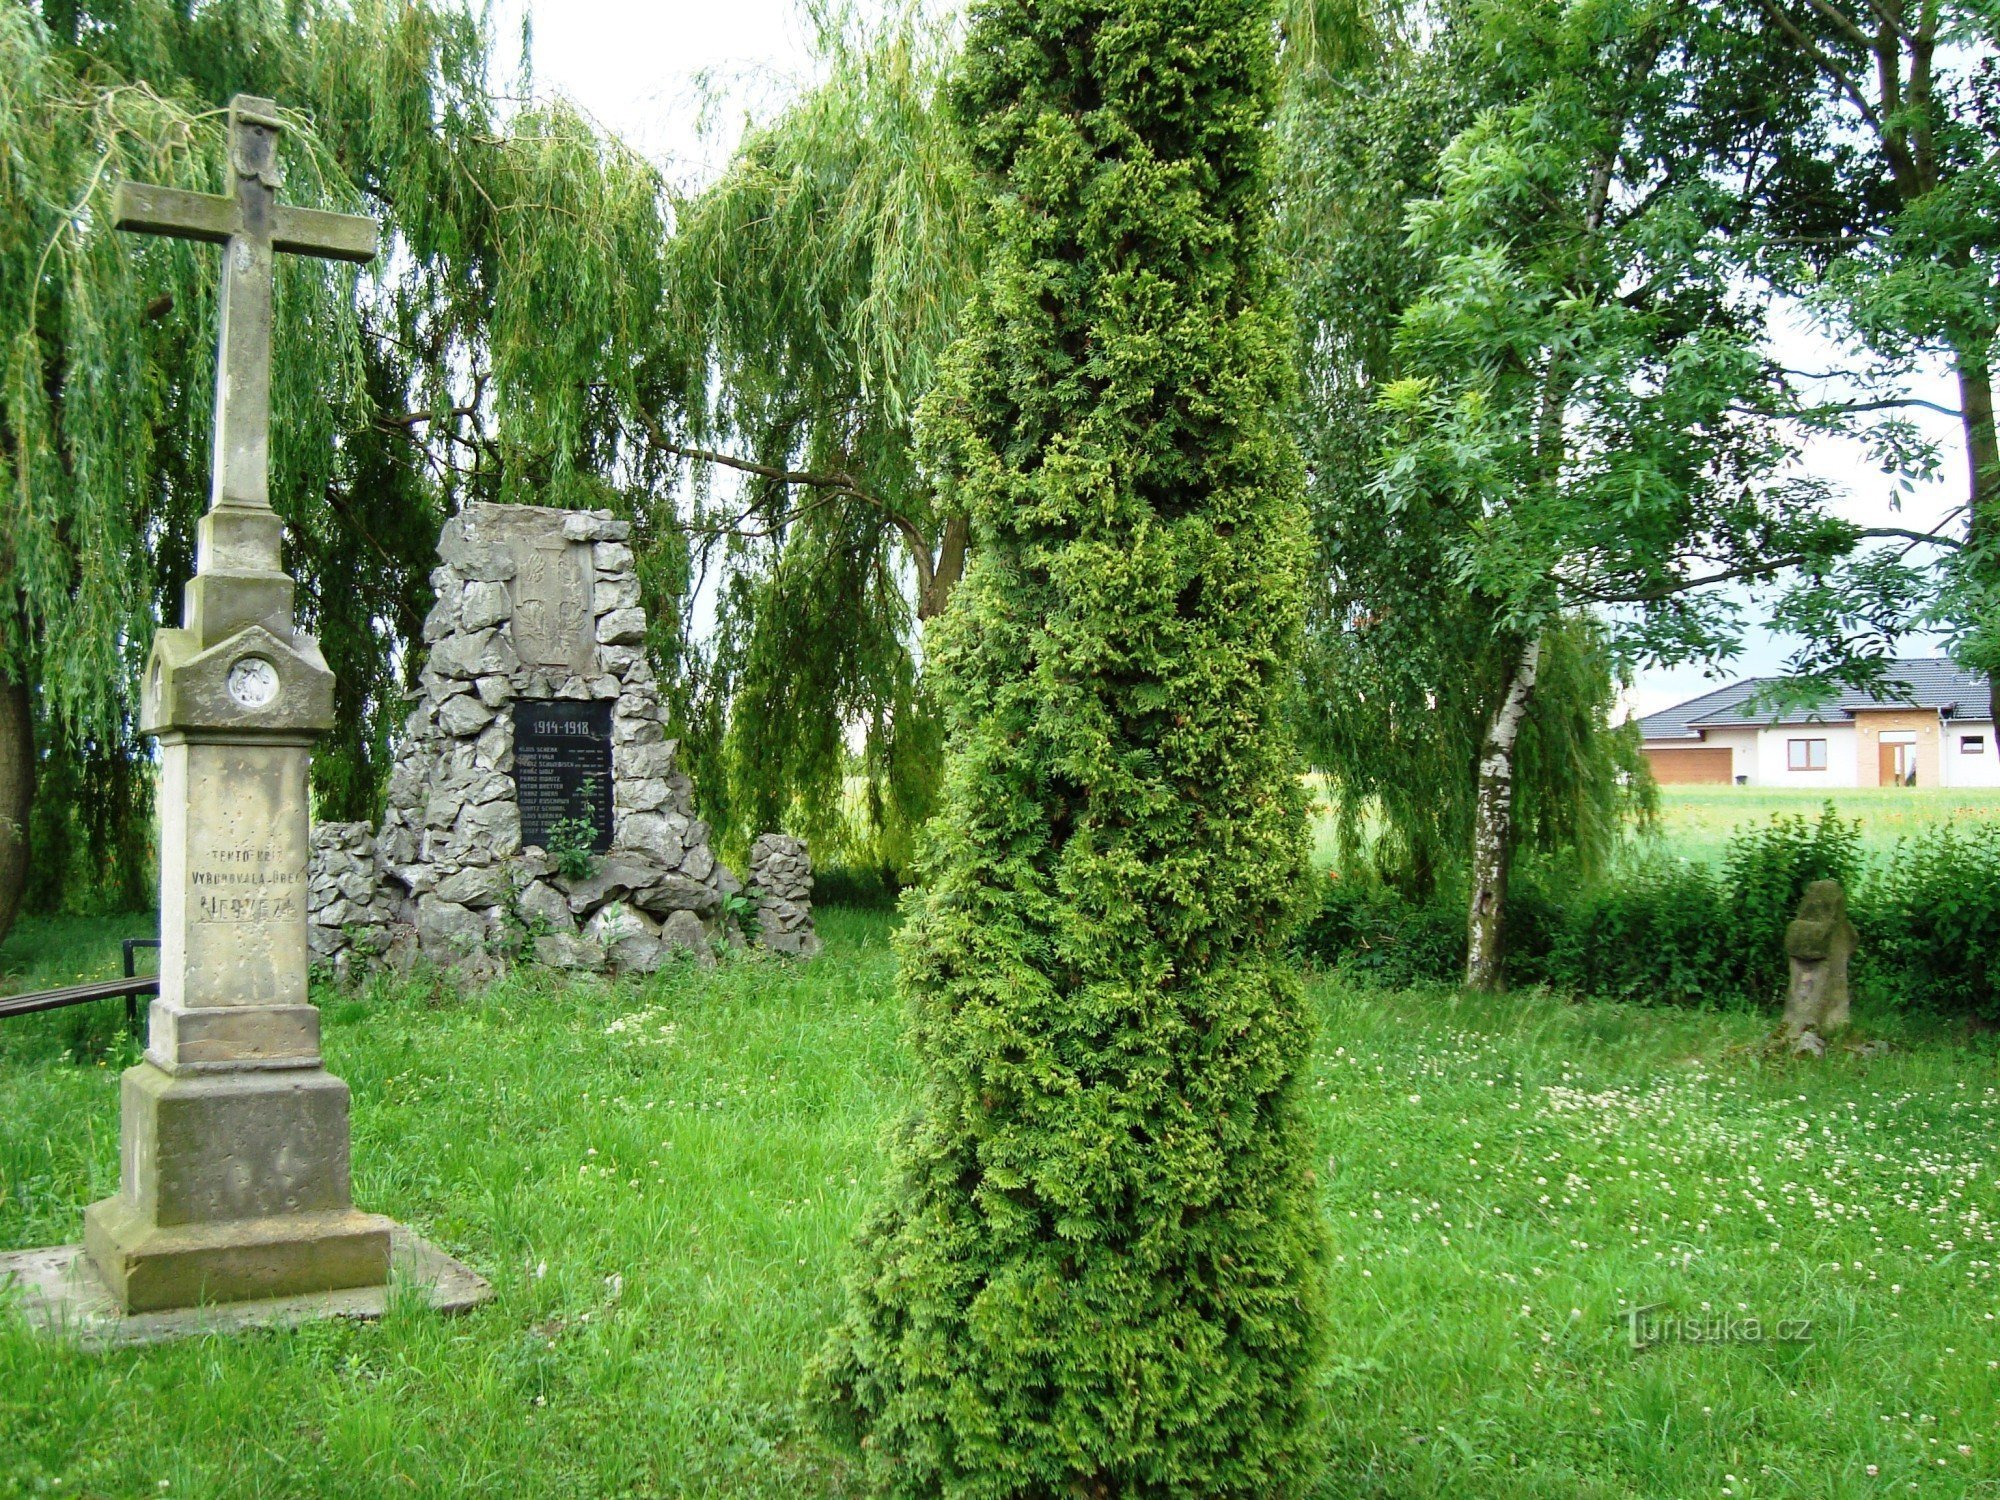 Nedvězí-park aan het begin van het dorp met een verzoeningskruis, een stenen kruis uit 1869 en pom